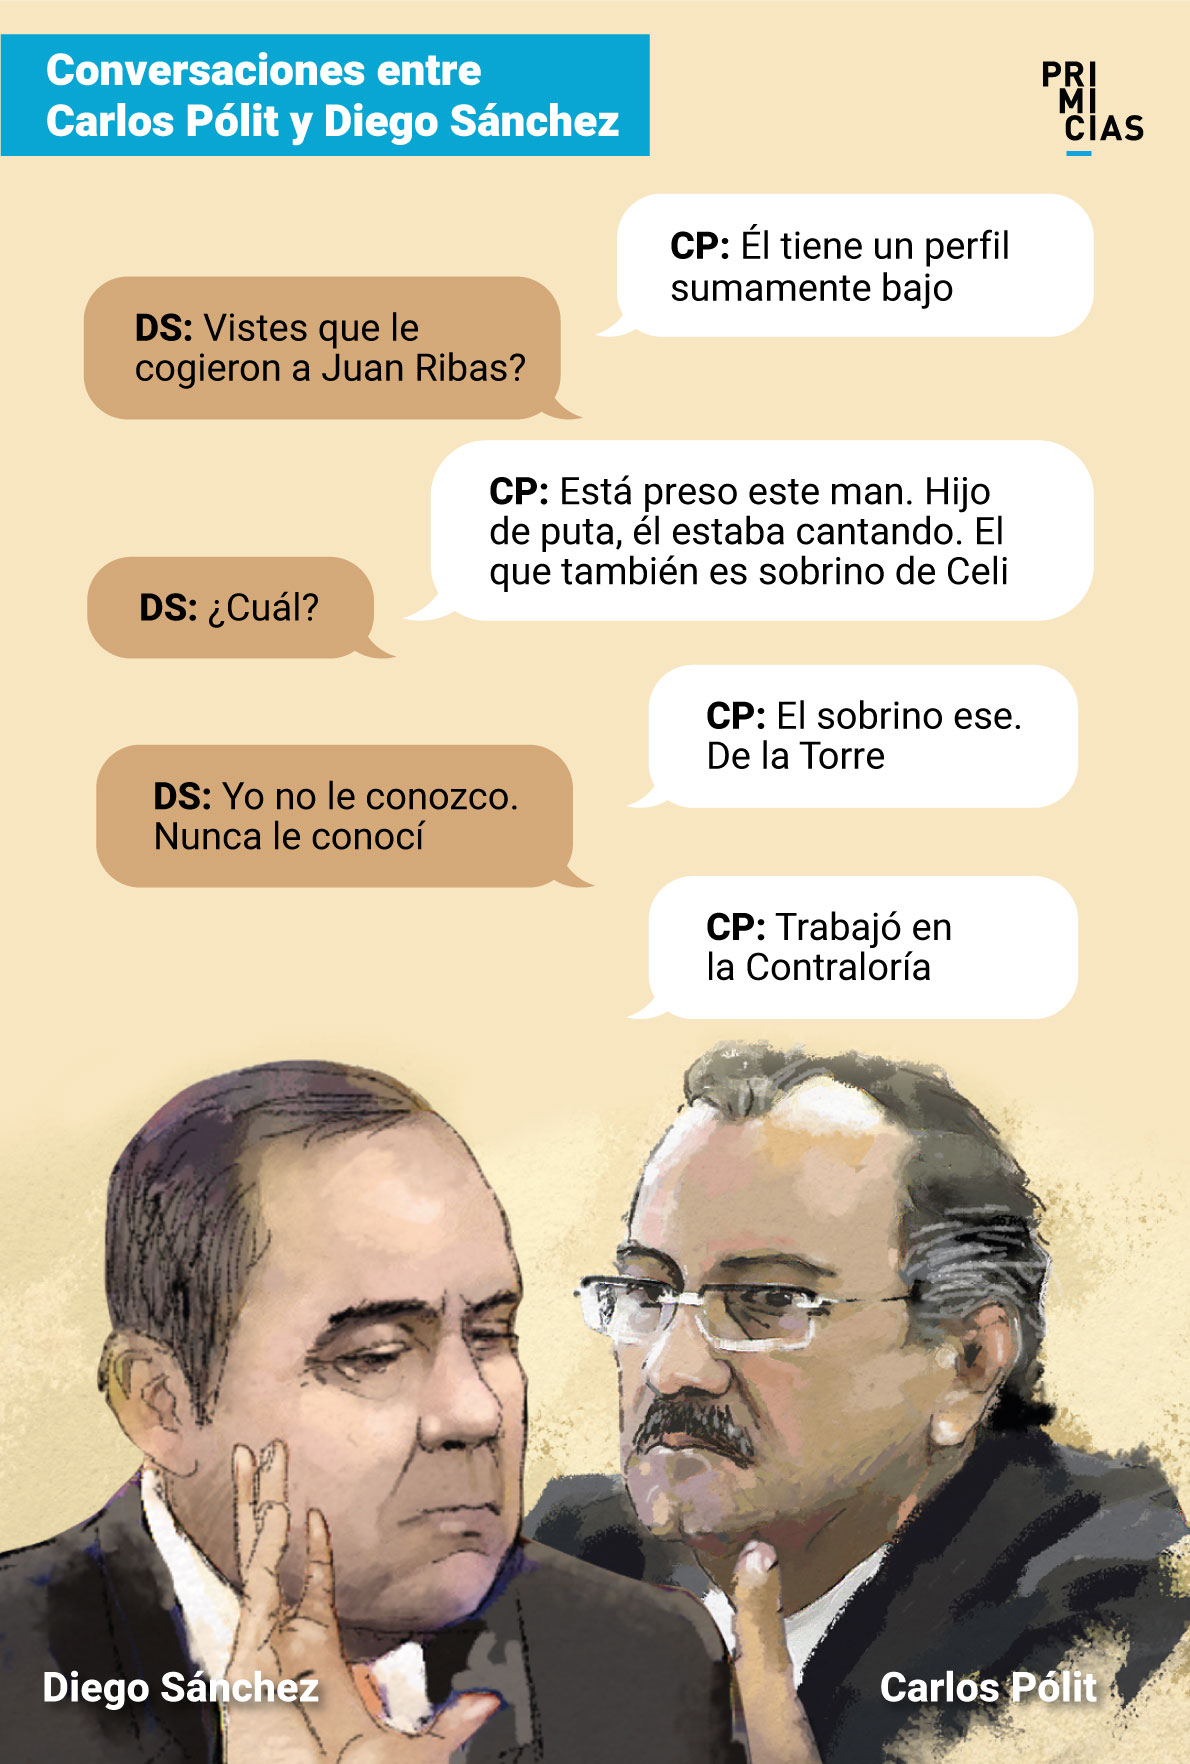 Conversación entre Carlos Pólit y Diego Sánchez